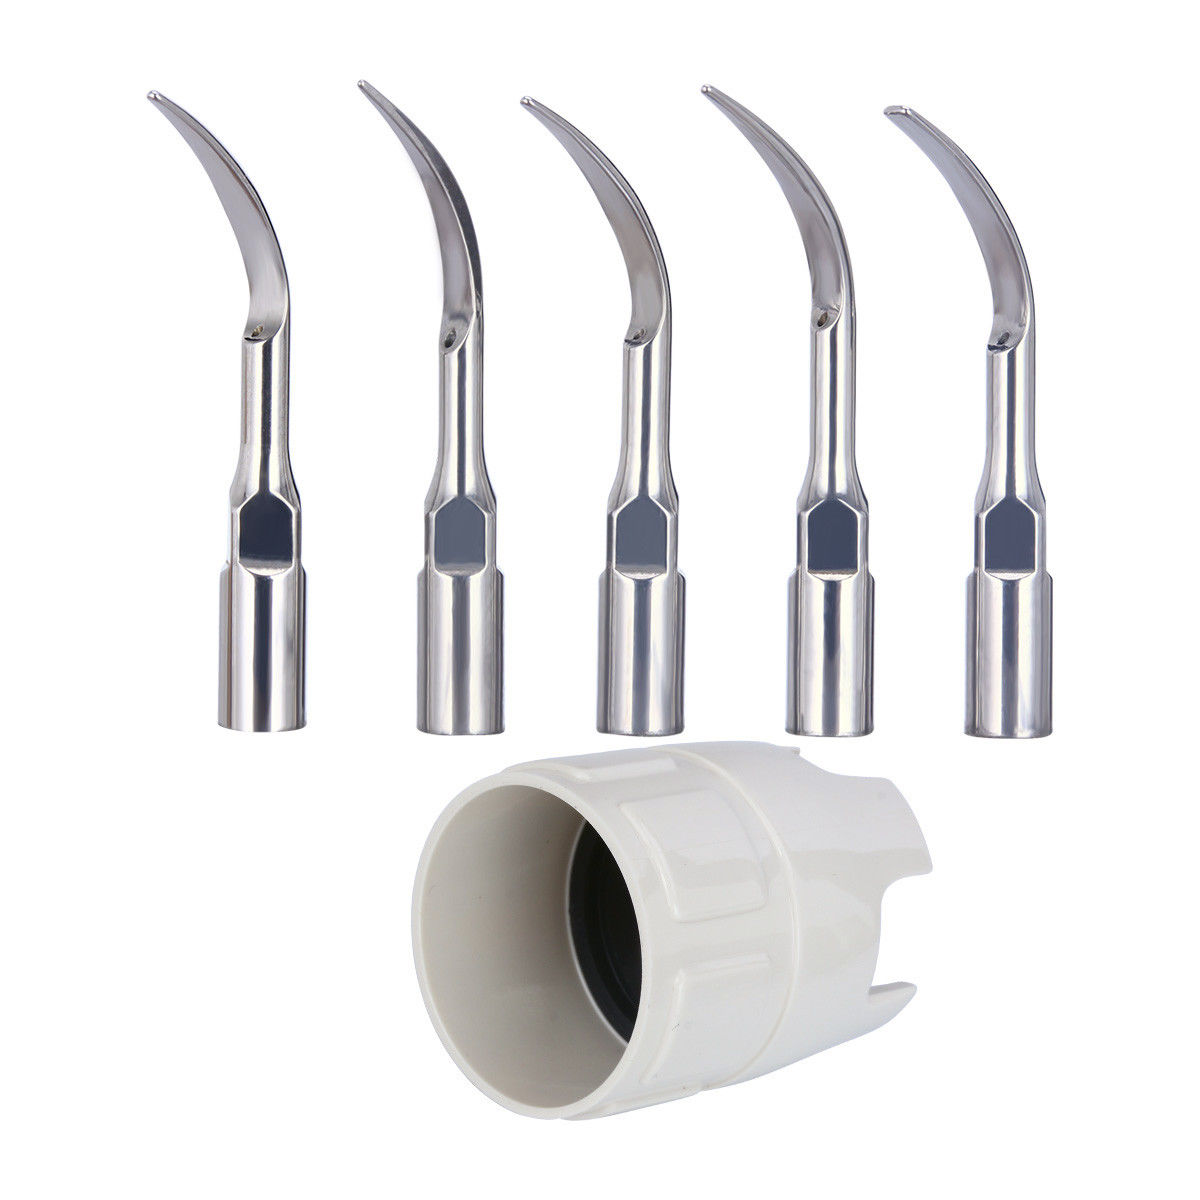 VRN VRN-I02 Ablatore ultrasuoni incorporato per poltrona dentista (manipolo rimovibile)